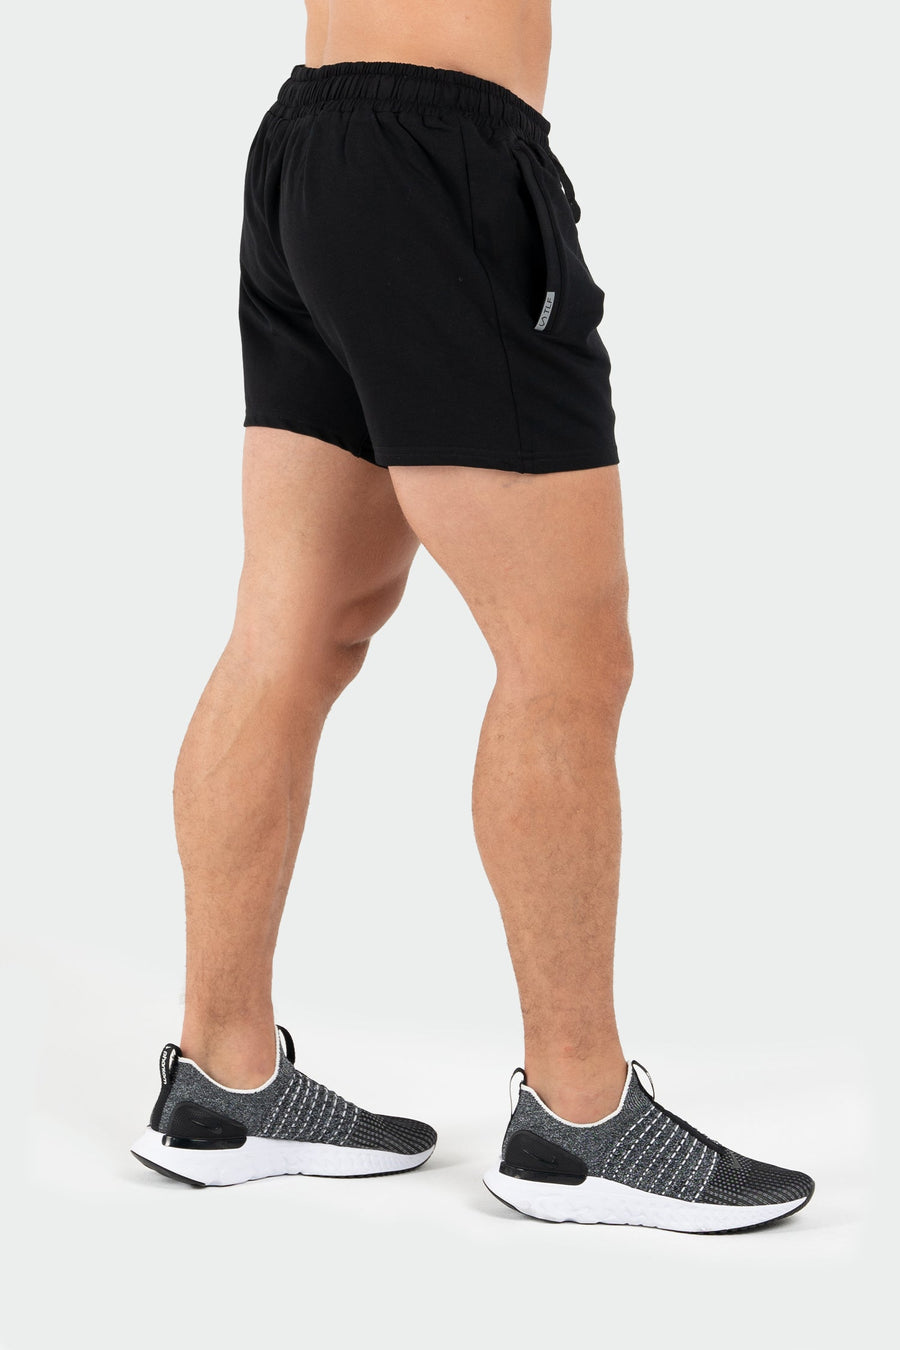 TLF Varsity 5” Shorts - Men’s 5 Inch inseam Shorts - Black - 3